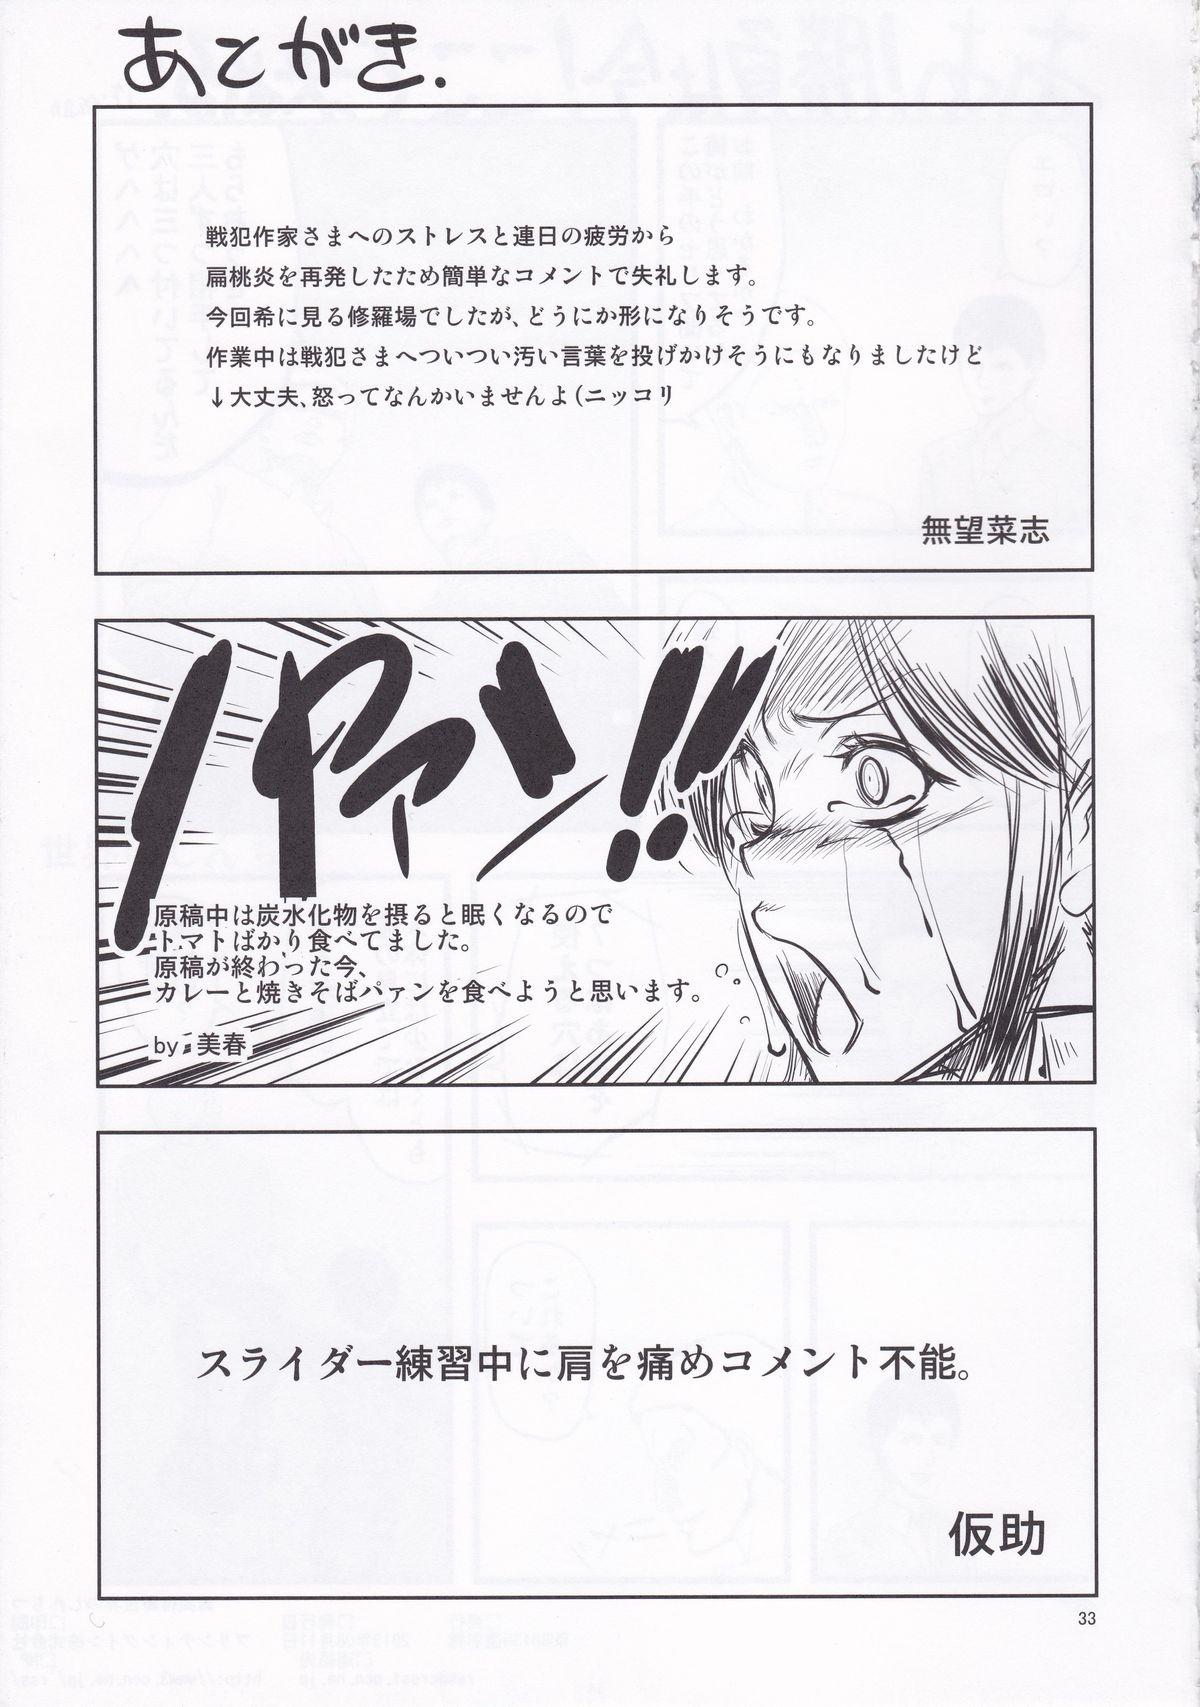 Creampies Sekai no Shinditsu - Shingeki no kyojin Highschool - Page 33